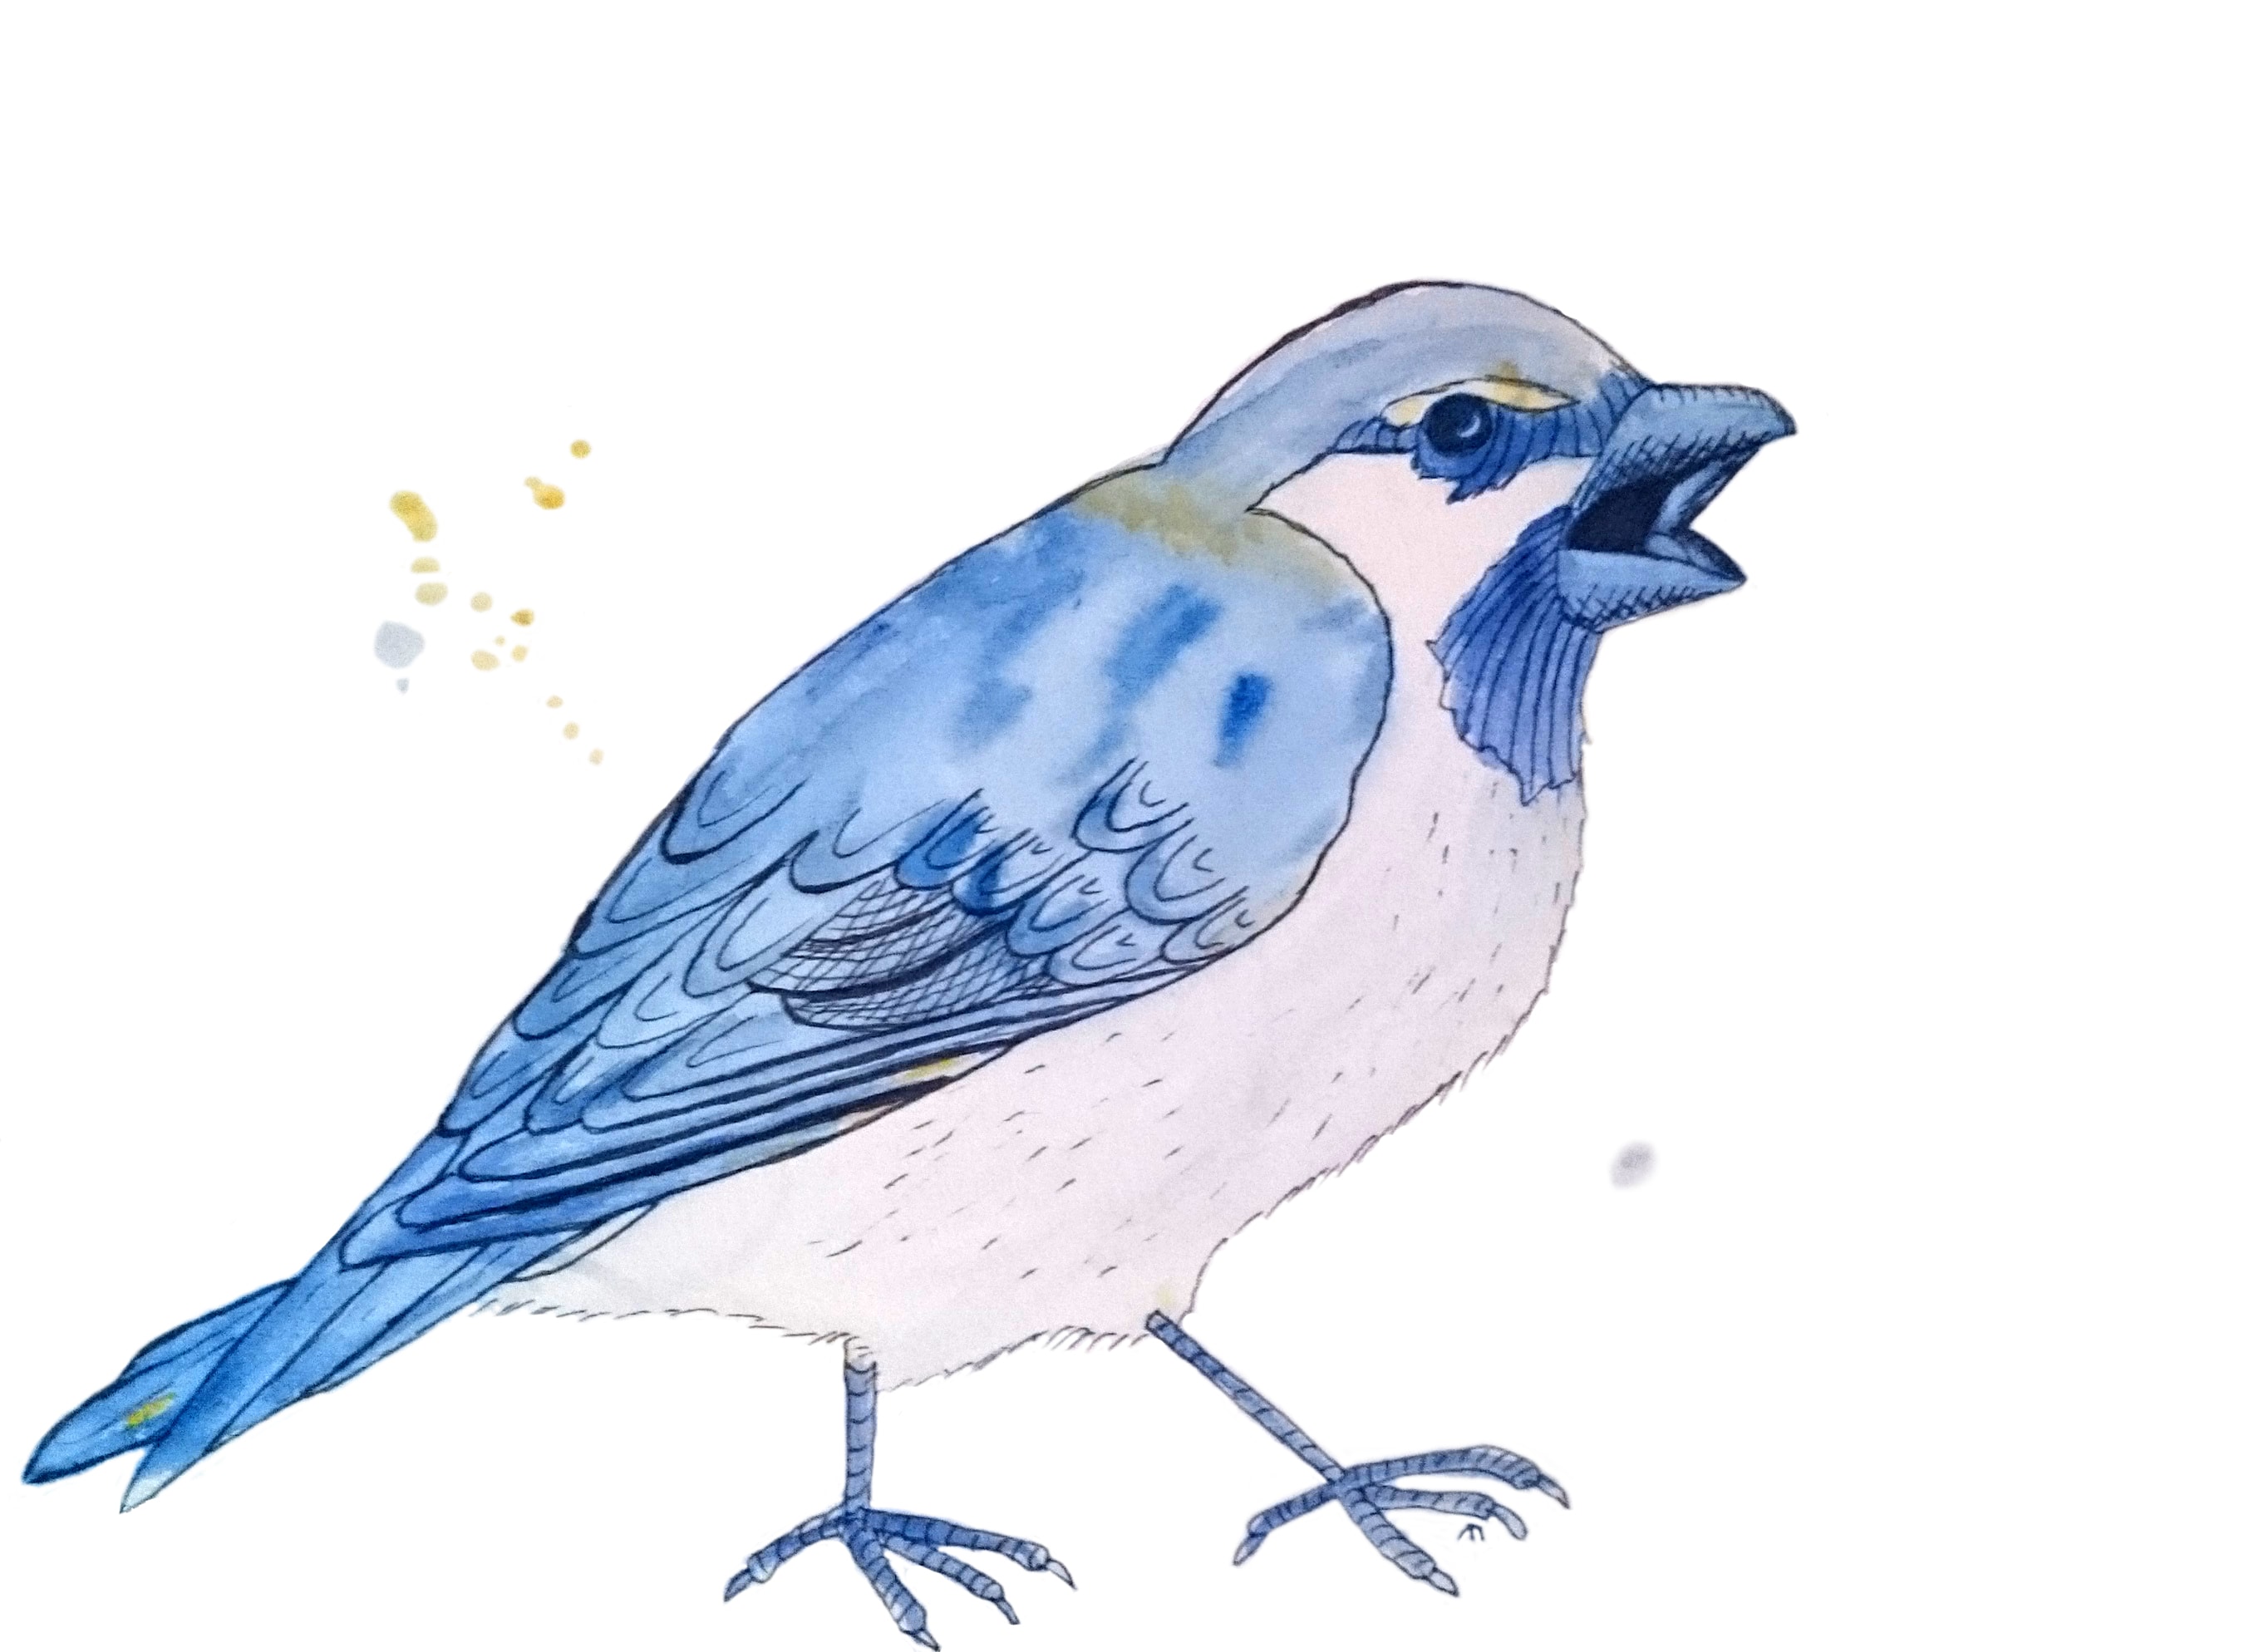 Strange Bird - 2 - Blå spurv med attityde